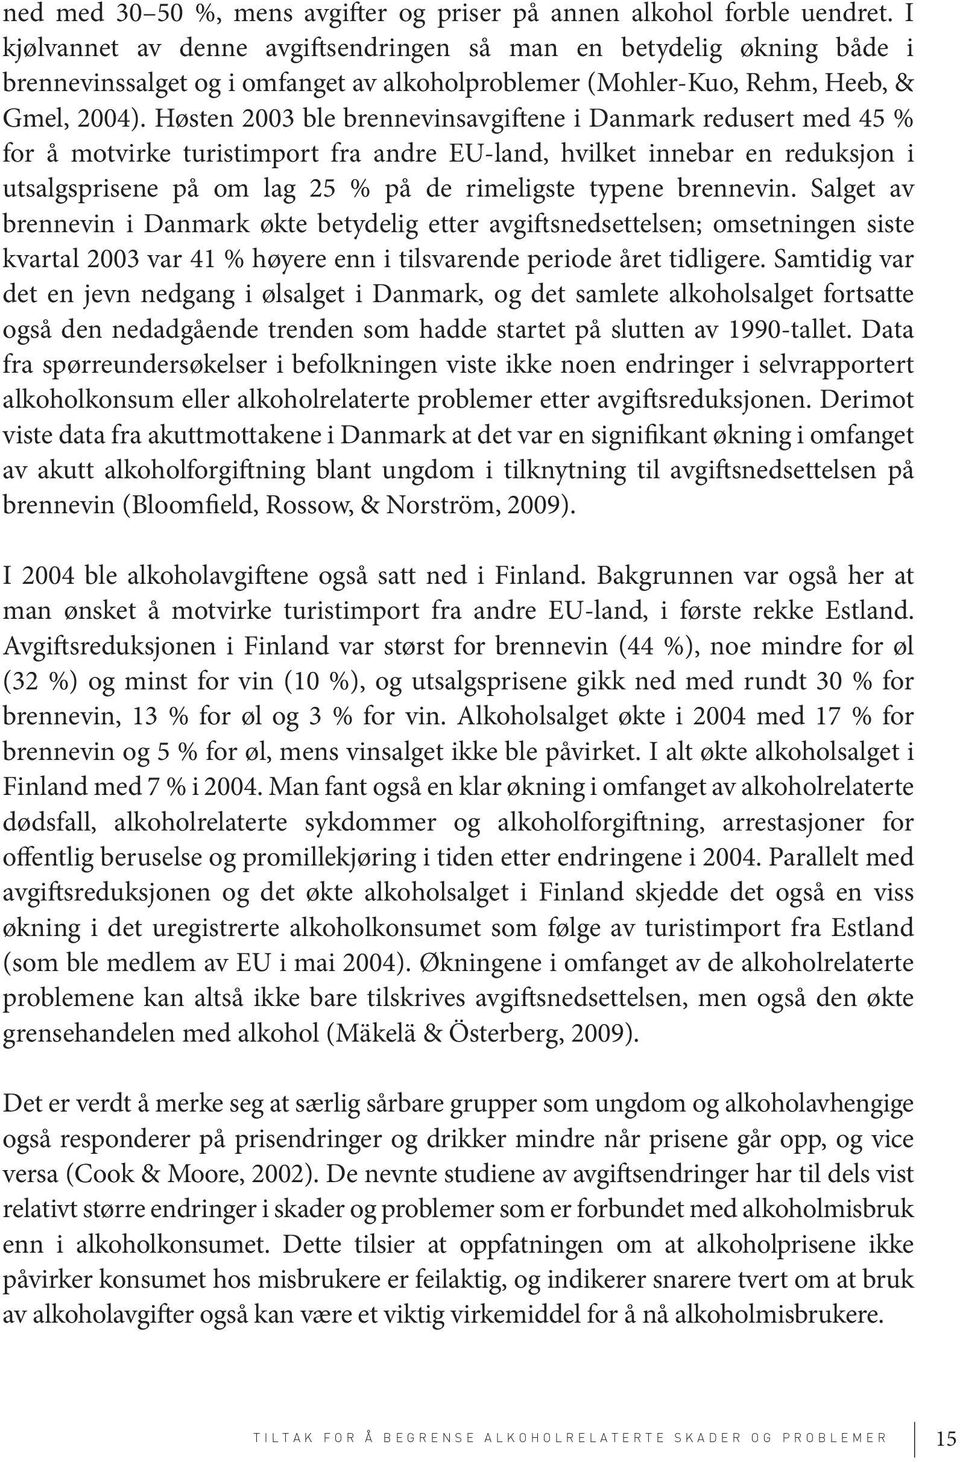 Høsten 2003 ble brennevinsavgiftene i Danmark redusert med 45 % for å motvirke turistimport fra andre EU-land, hvilket innebar en reduksjon i utsalgsprisene på om lag 25 % på de rimeligste typene